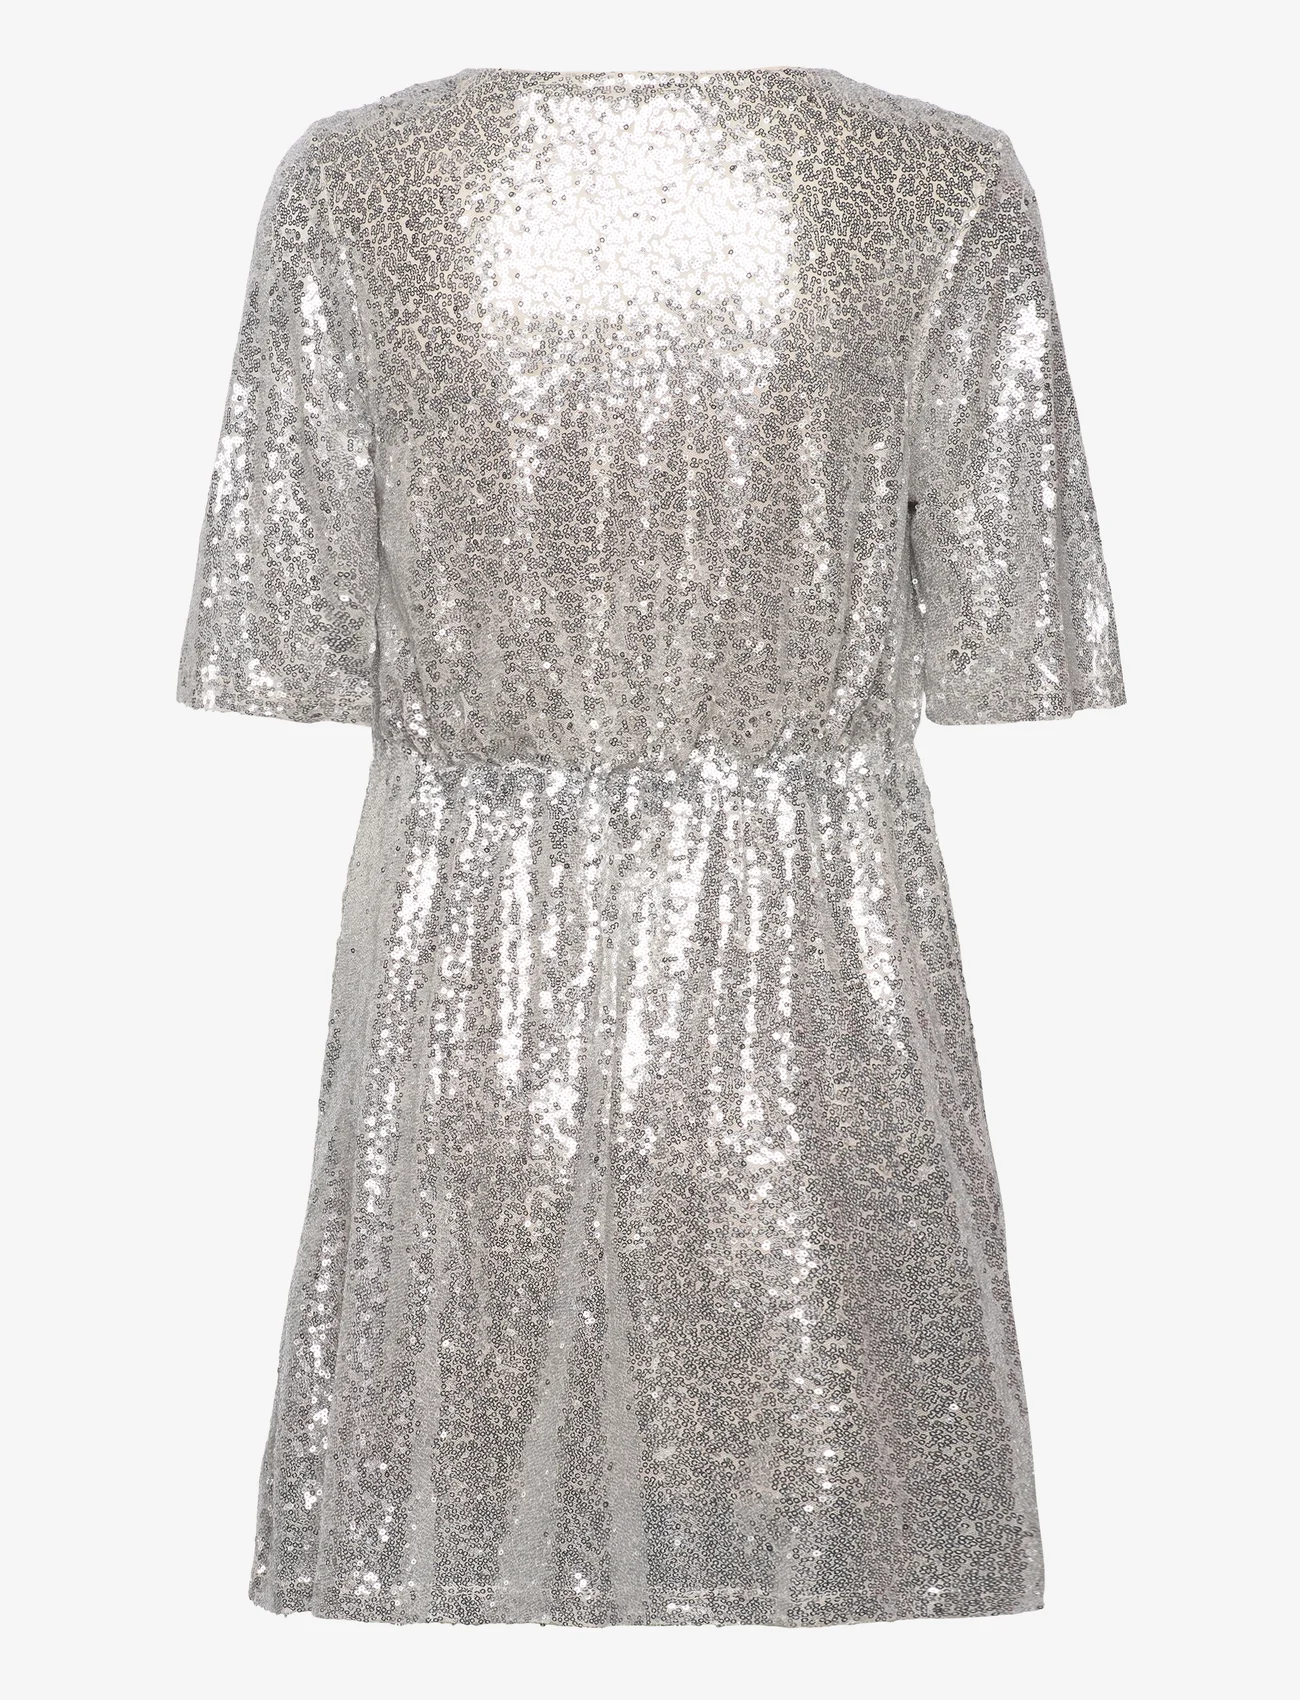 Vero Moda - VMKAJE 2/4 SHORT DRESS JRS - festmode zu outlet-preisen - silver colour - 1